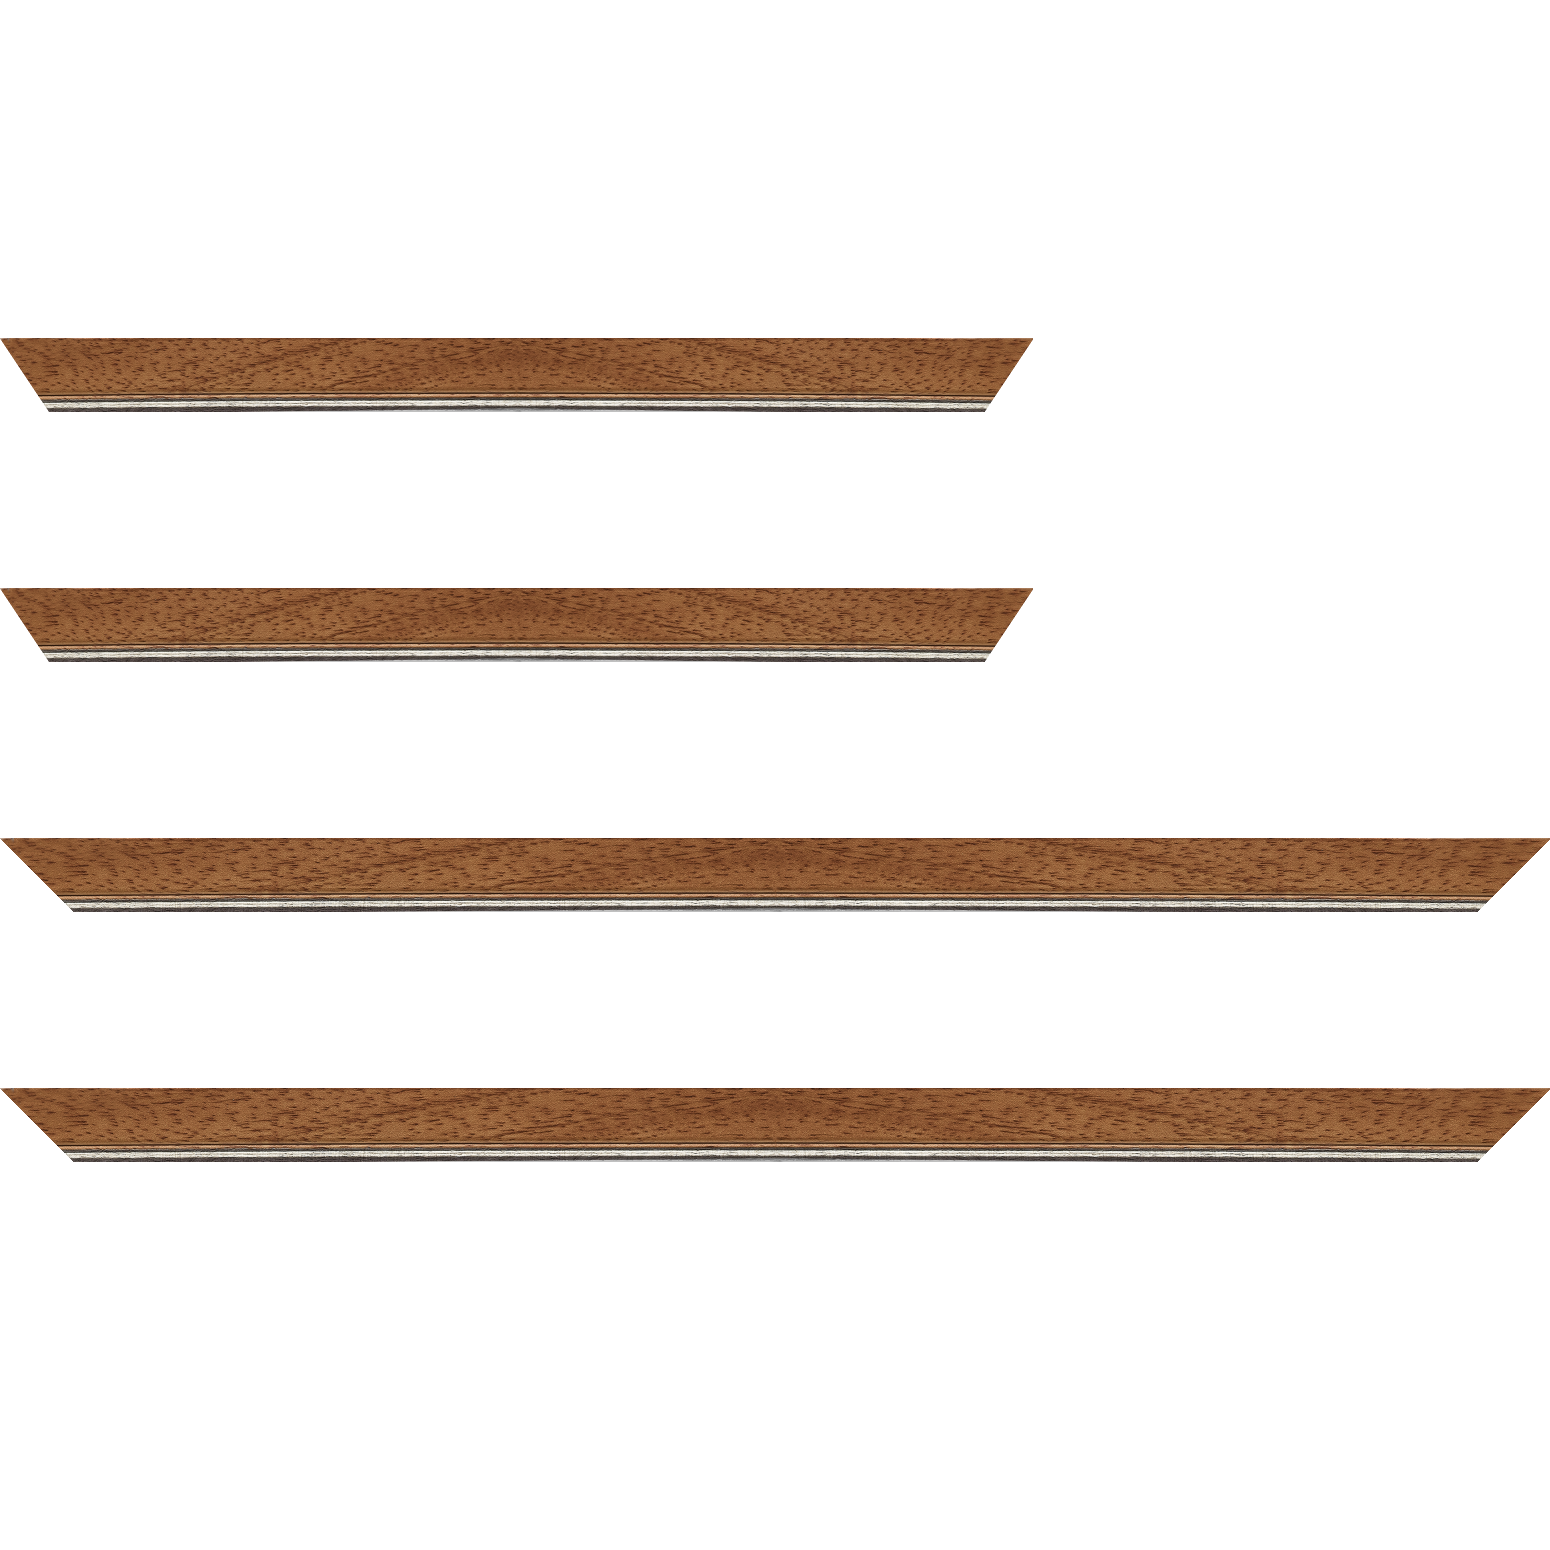 Baguette bois profil plat largeur 2.5cm couleur marron ton bois filet argent - 92x60